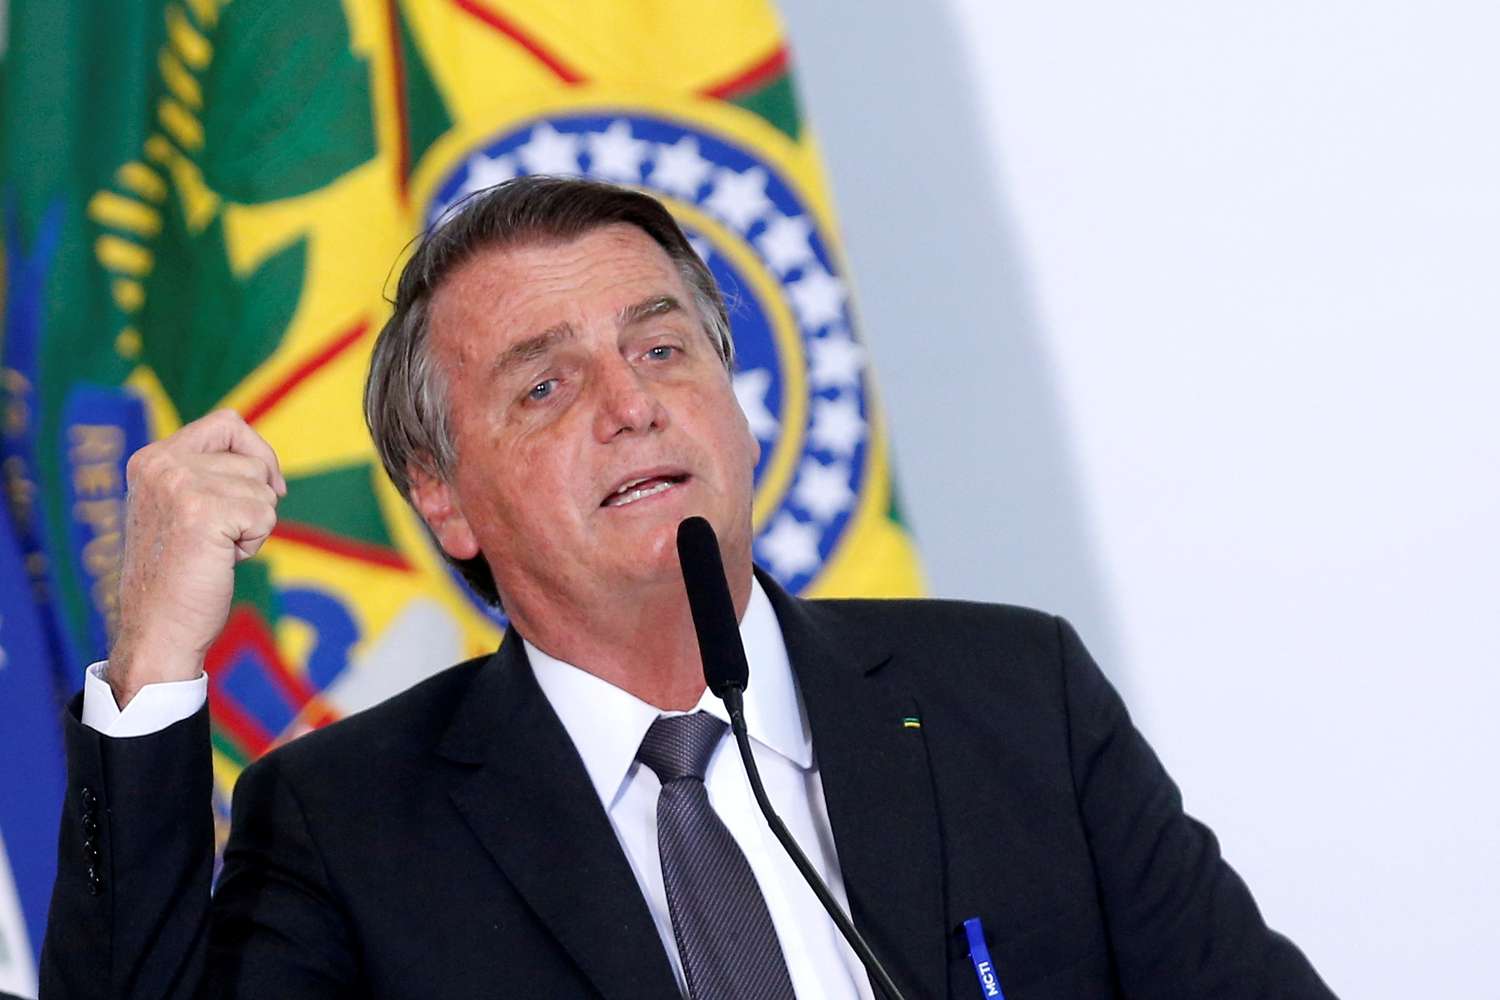 Nosotros no somos opositores (a la izquierda), somos enemigos", aseveró el exmandatario brasileño.